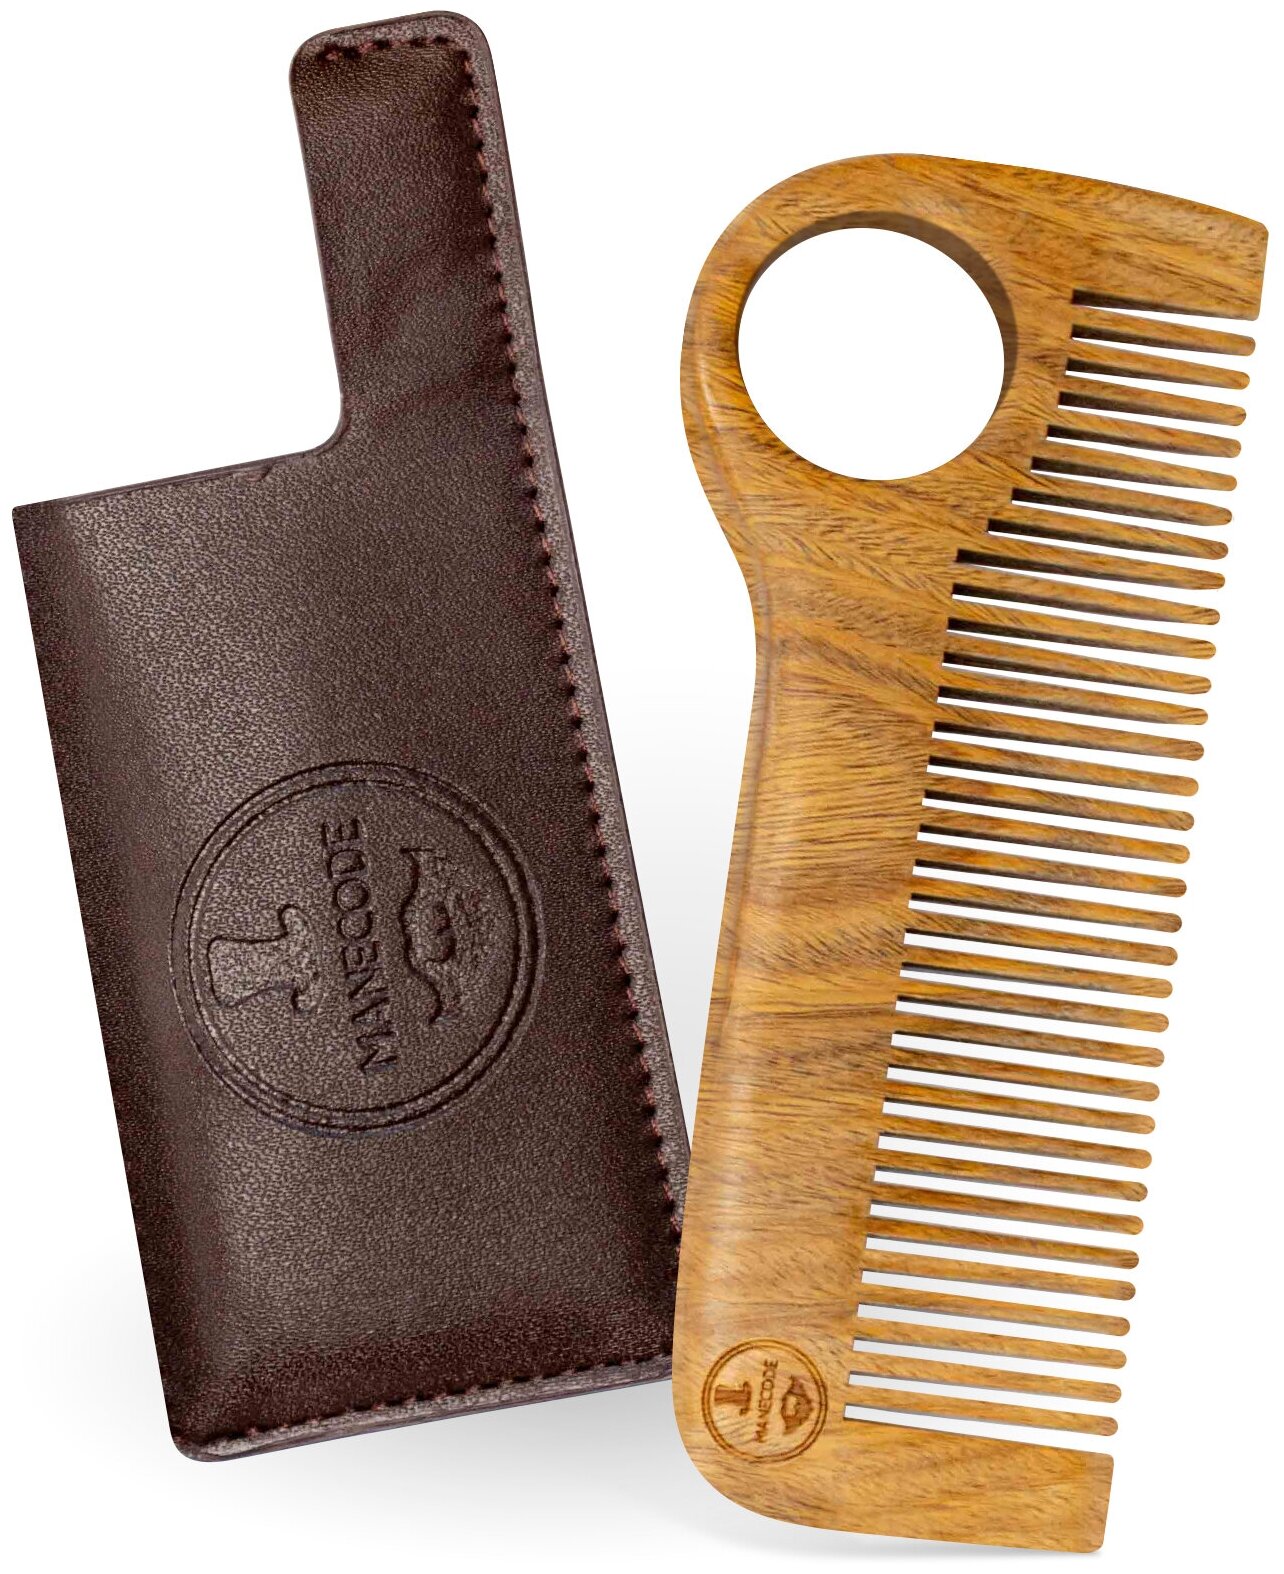 Расчёска для бороды и волос Manecode – прочный деревянный гребень для мужчин из натурального сандала с Anti-Static эффектом в чехле из экокожи